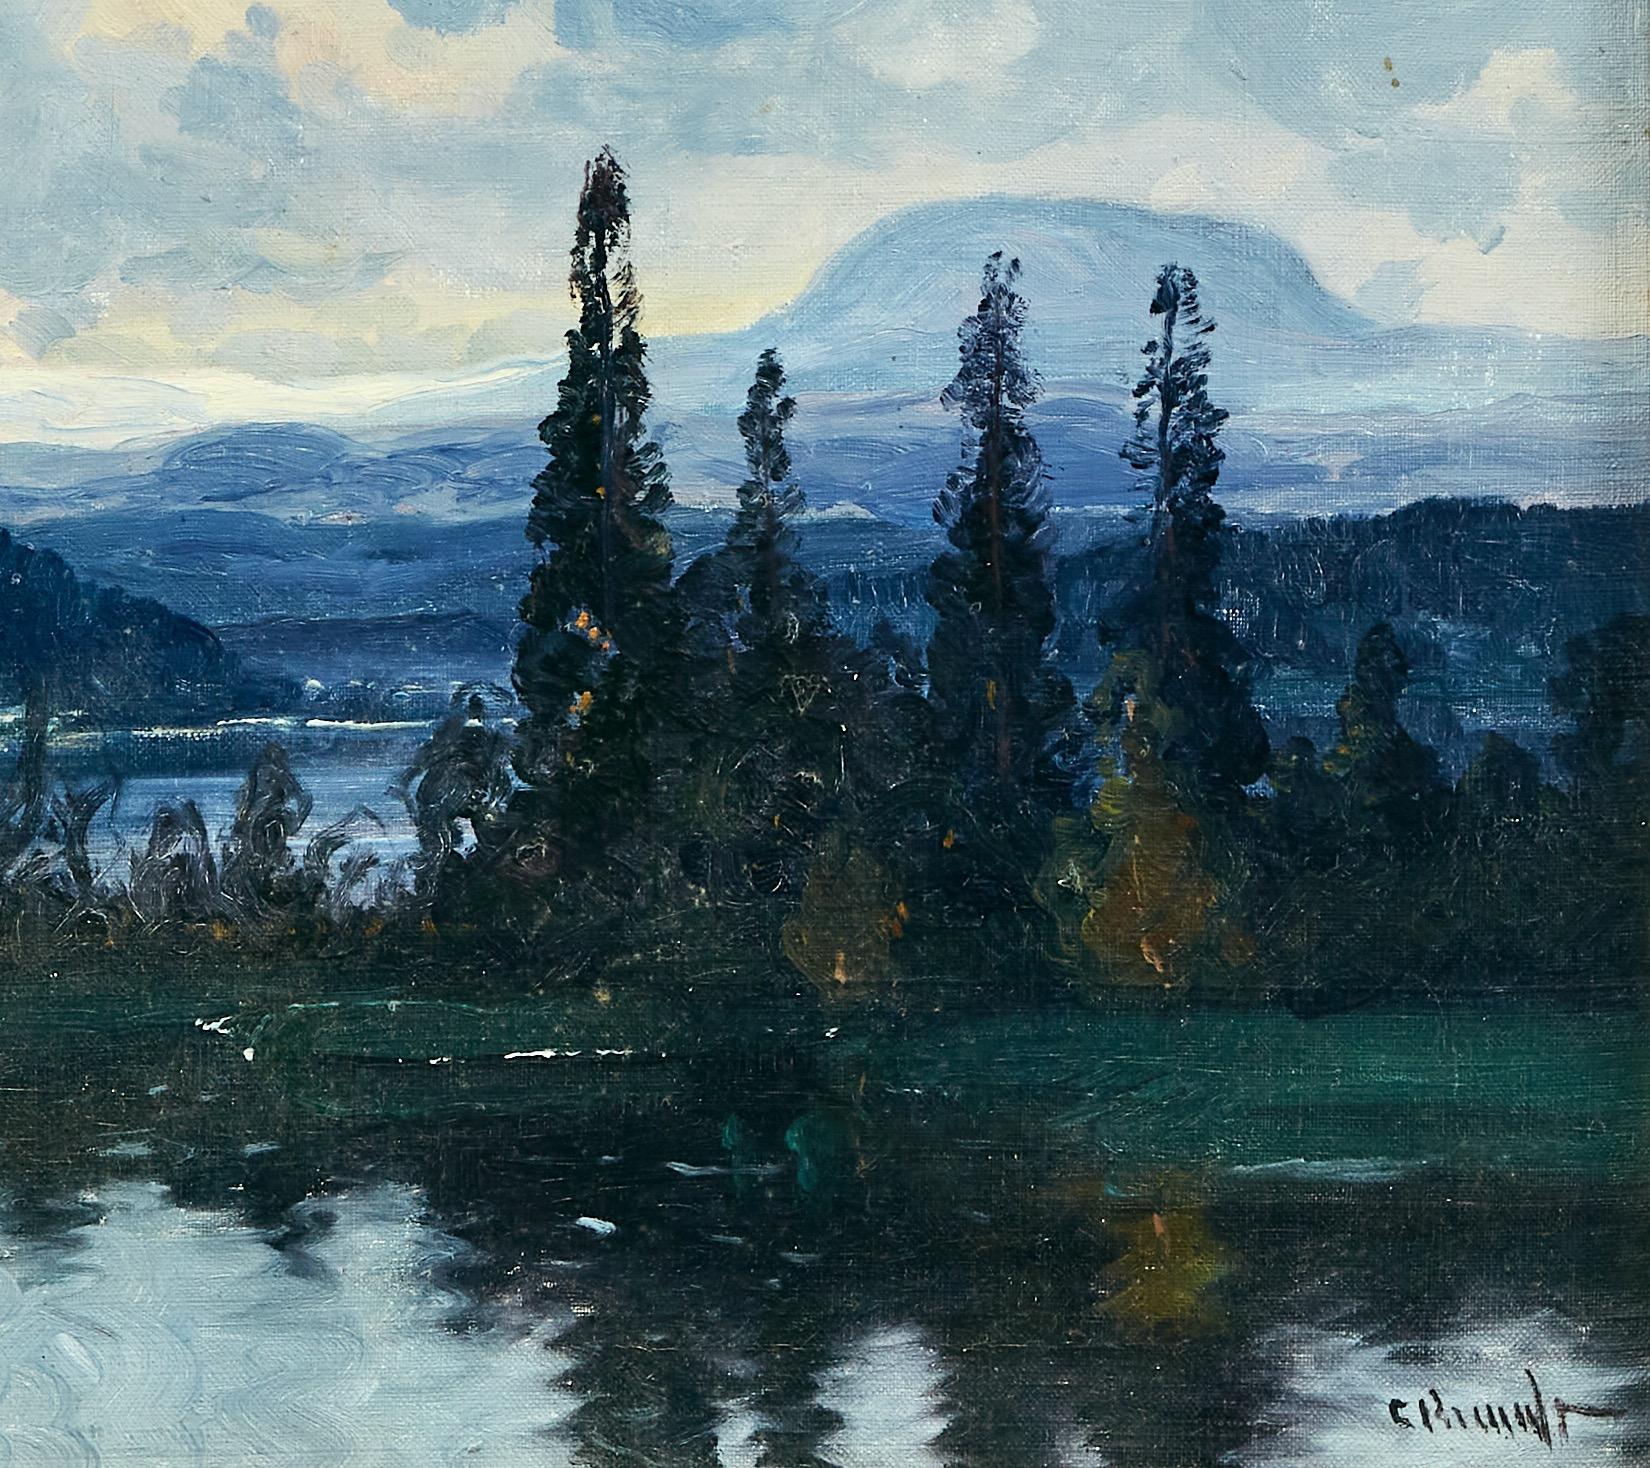  Nolbykullen et Ljungan, paysage de montagne suédois. Huile sur toile, circa 1900. - Naturalisme Painting par Carl Brandt